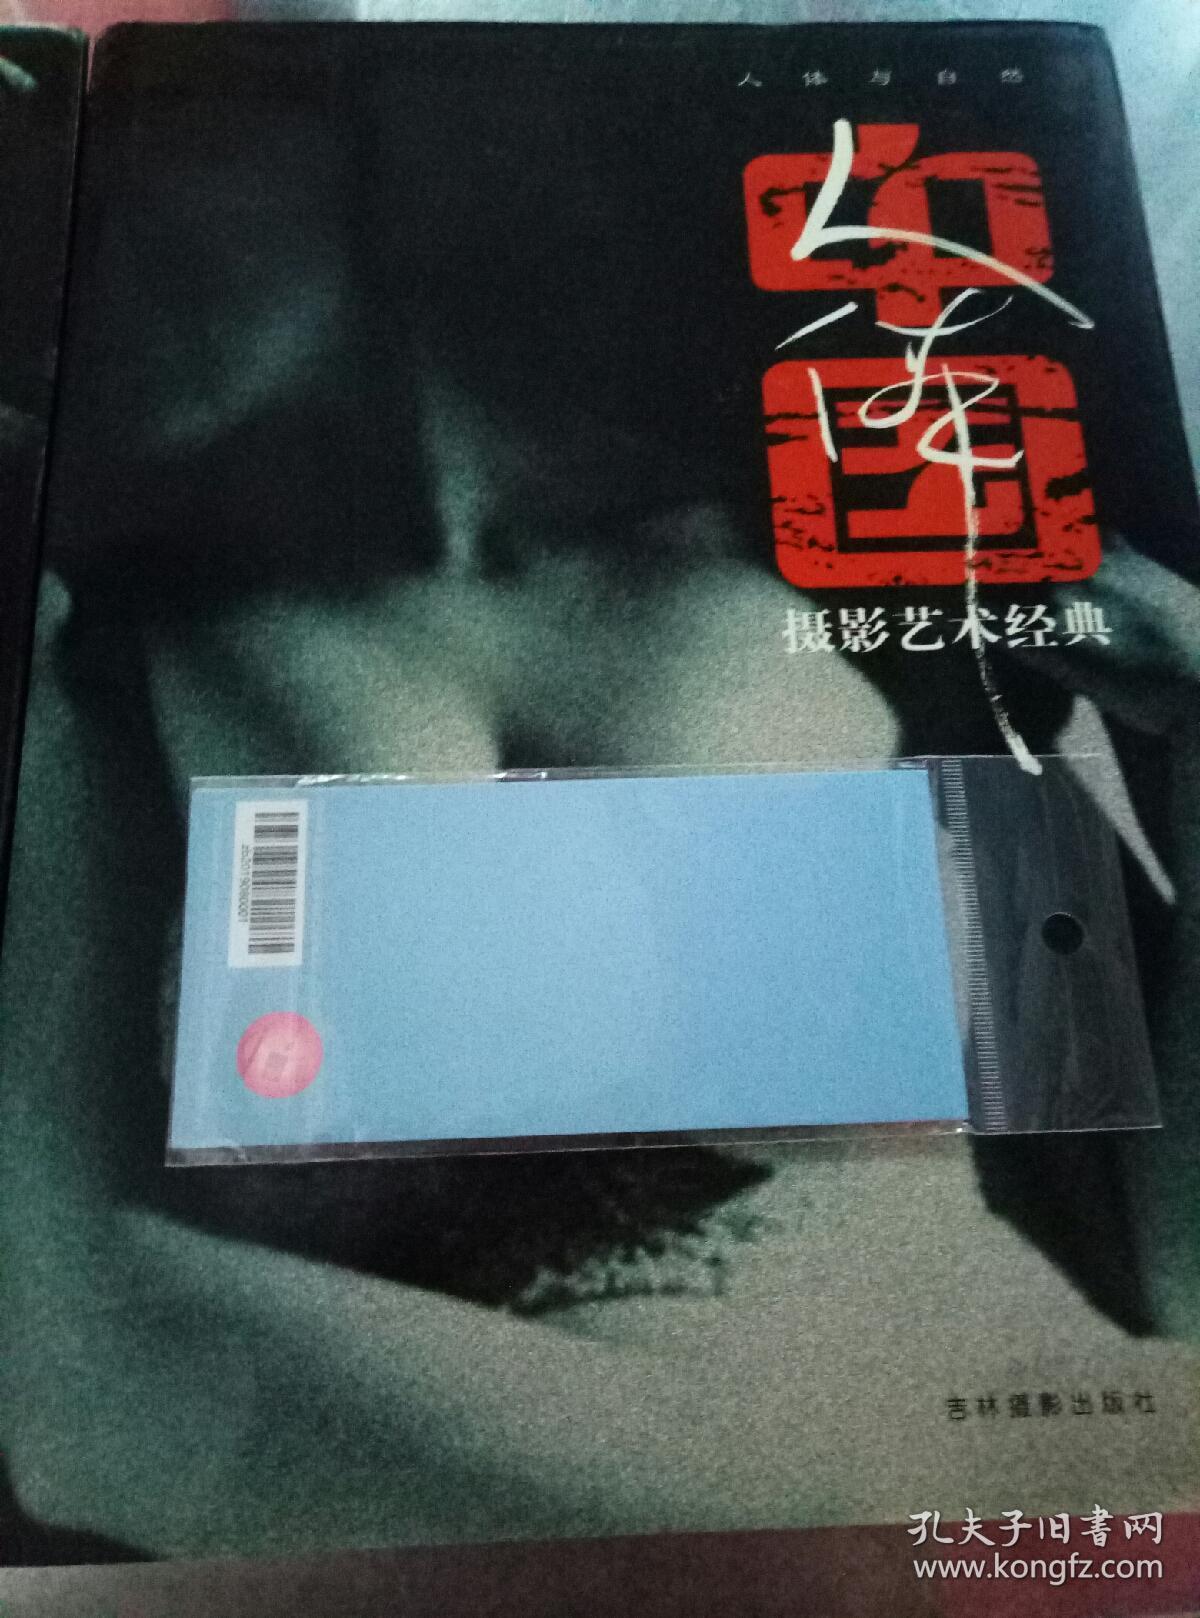 中国人体摄影艺术经典 性感与情感 人体与自然 两册合售【没有外盒】